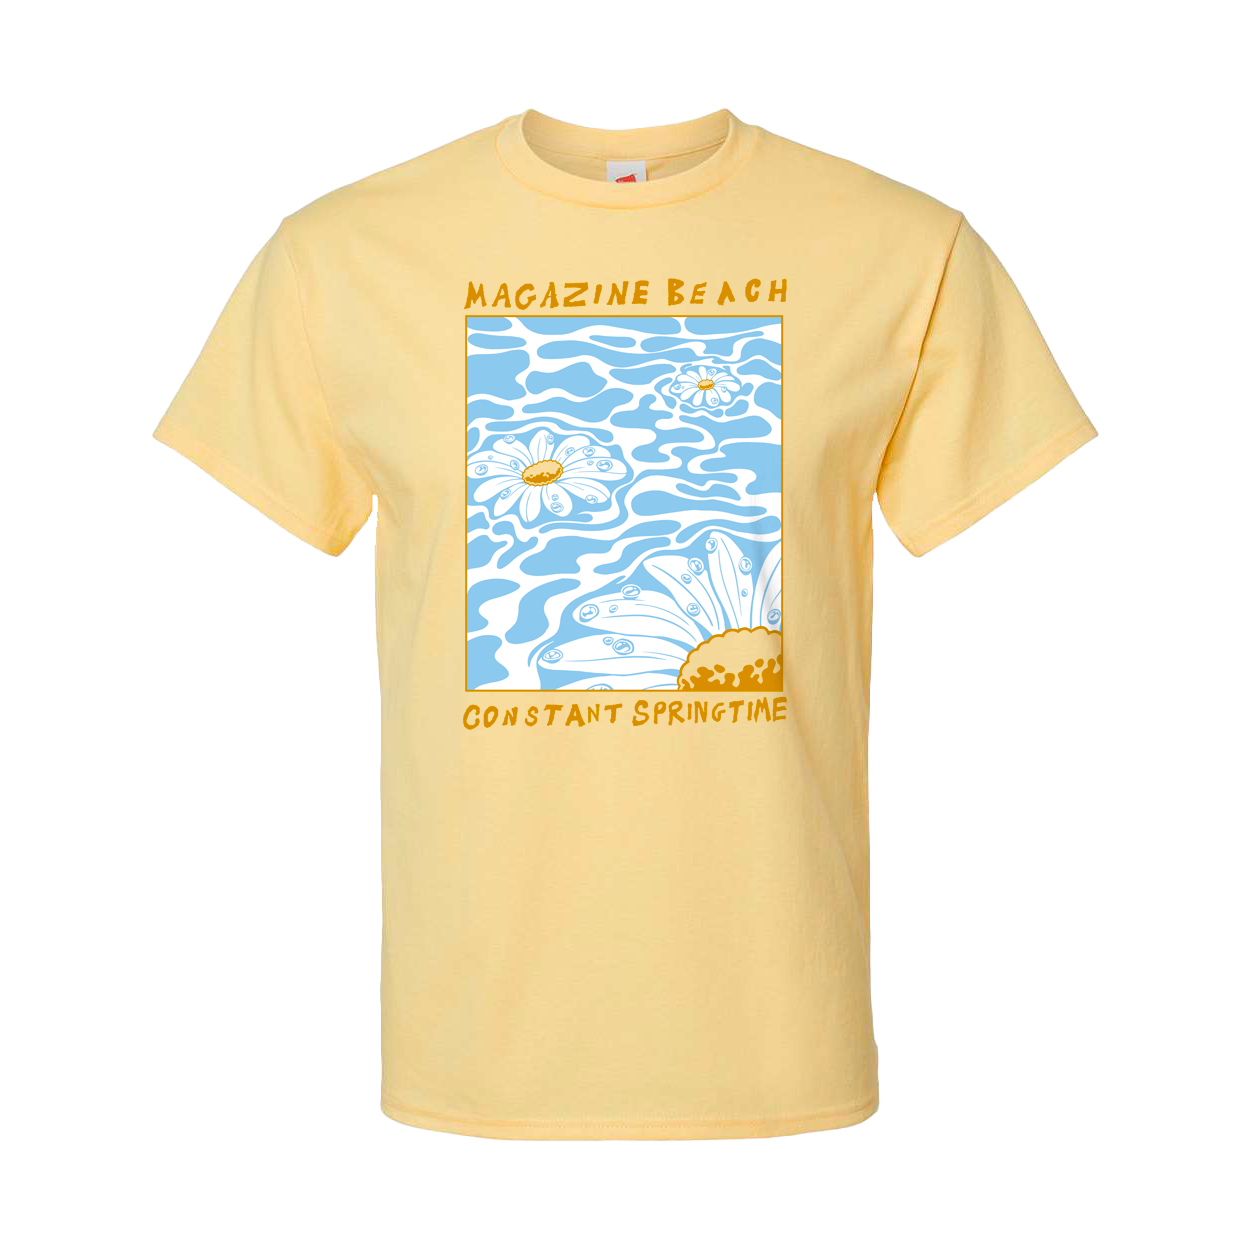 Magazine Beach - "Springtime" T-Shirt